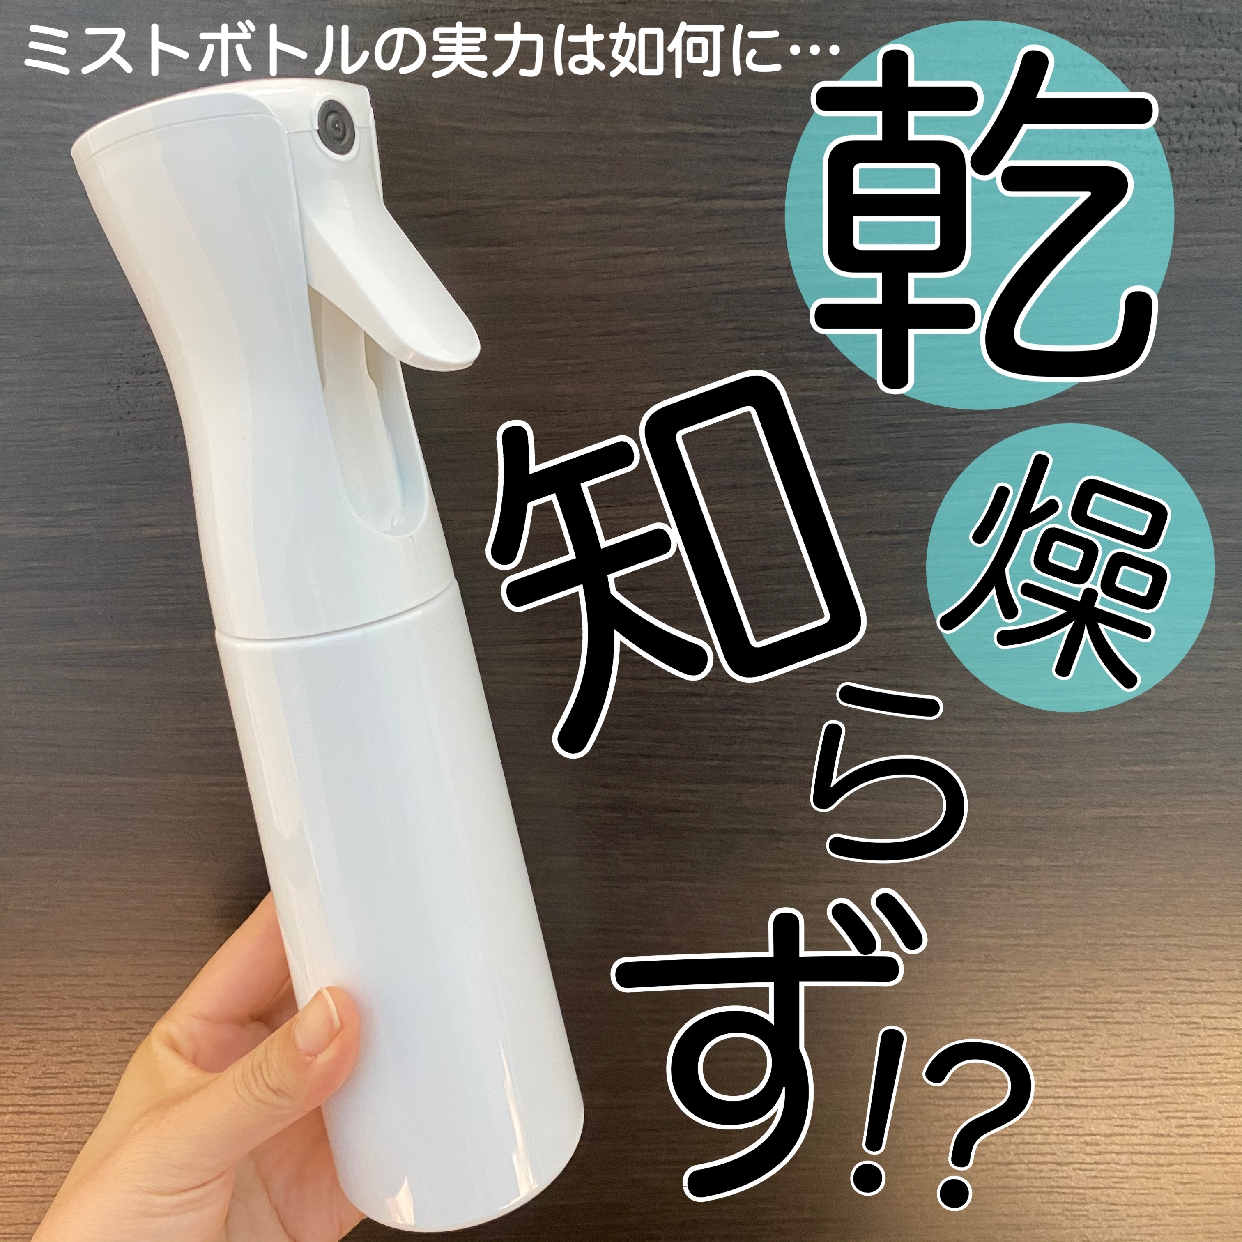 Cleanxia(クリンシア) マイクロミスト スプレーボトルの良い点・メリットに関するChihiroさんの口コミ画像1